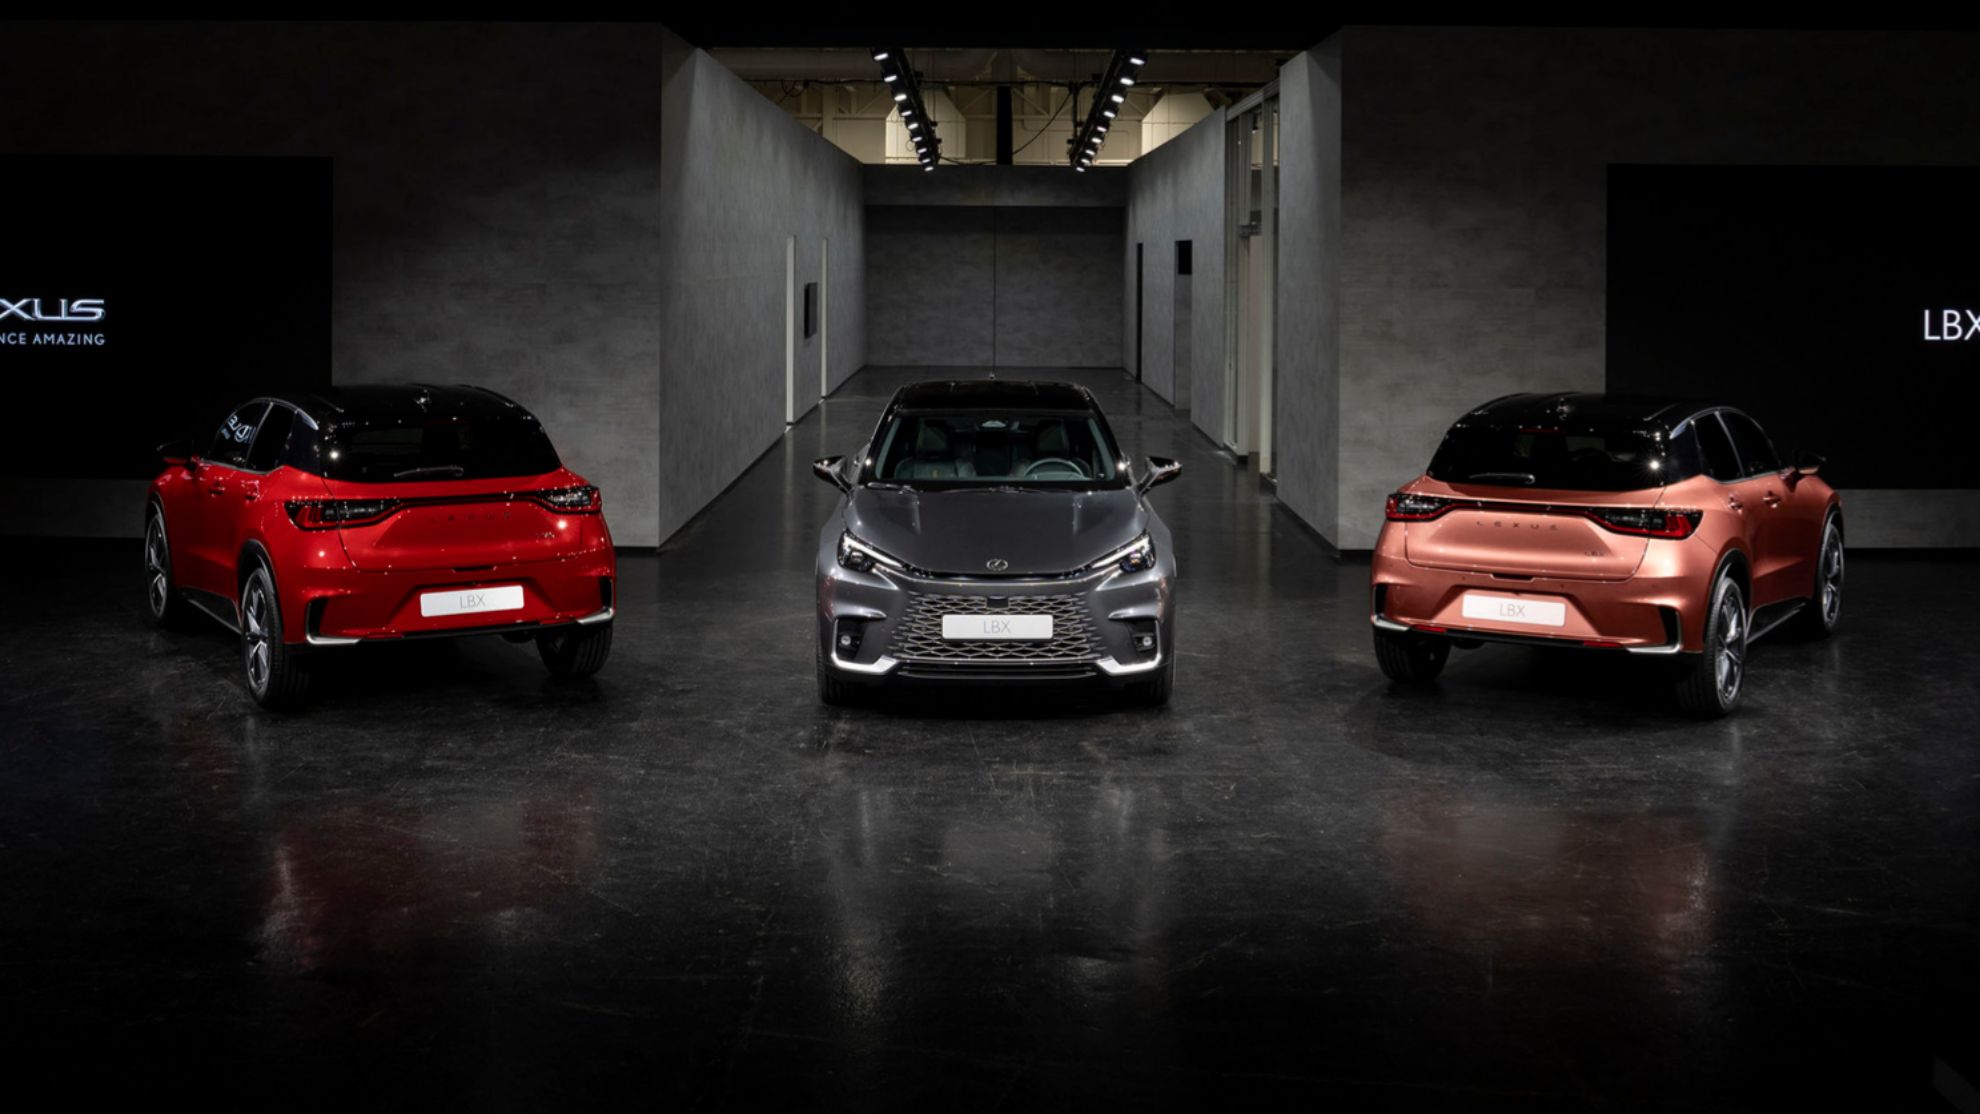 El Lexus LBX tiene tres estilos diferentes que se plasman en su aspecto exterior.